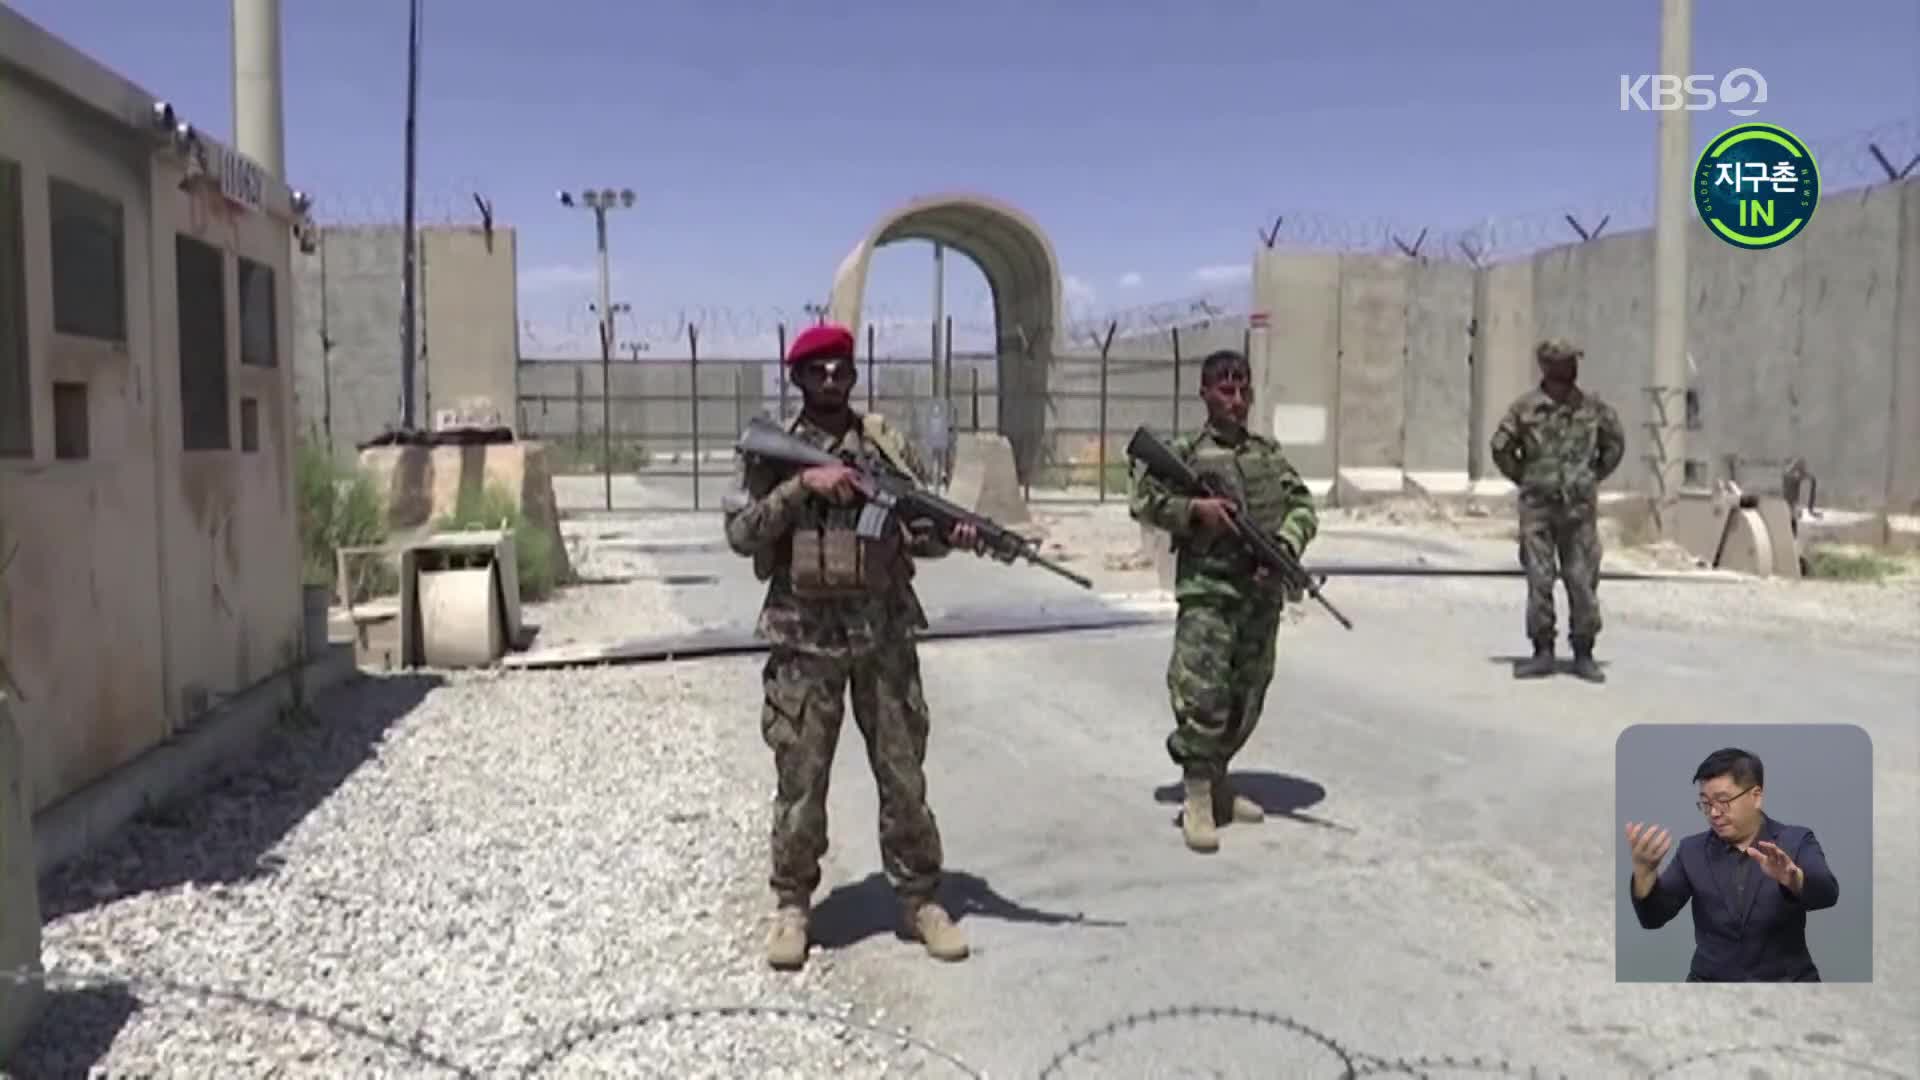 [지구촌 IN] 美 철군에 탈레반 장악 현실화…아프간의 미래는?